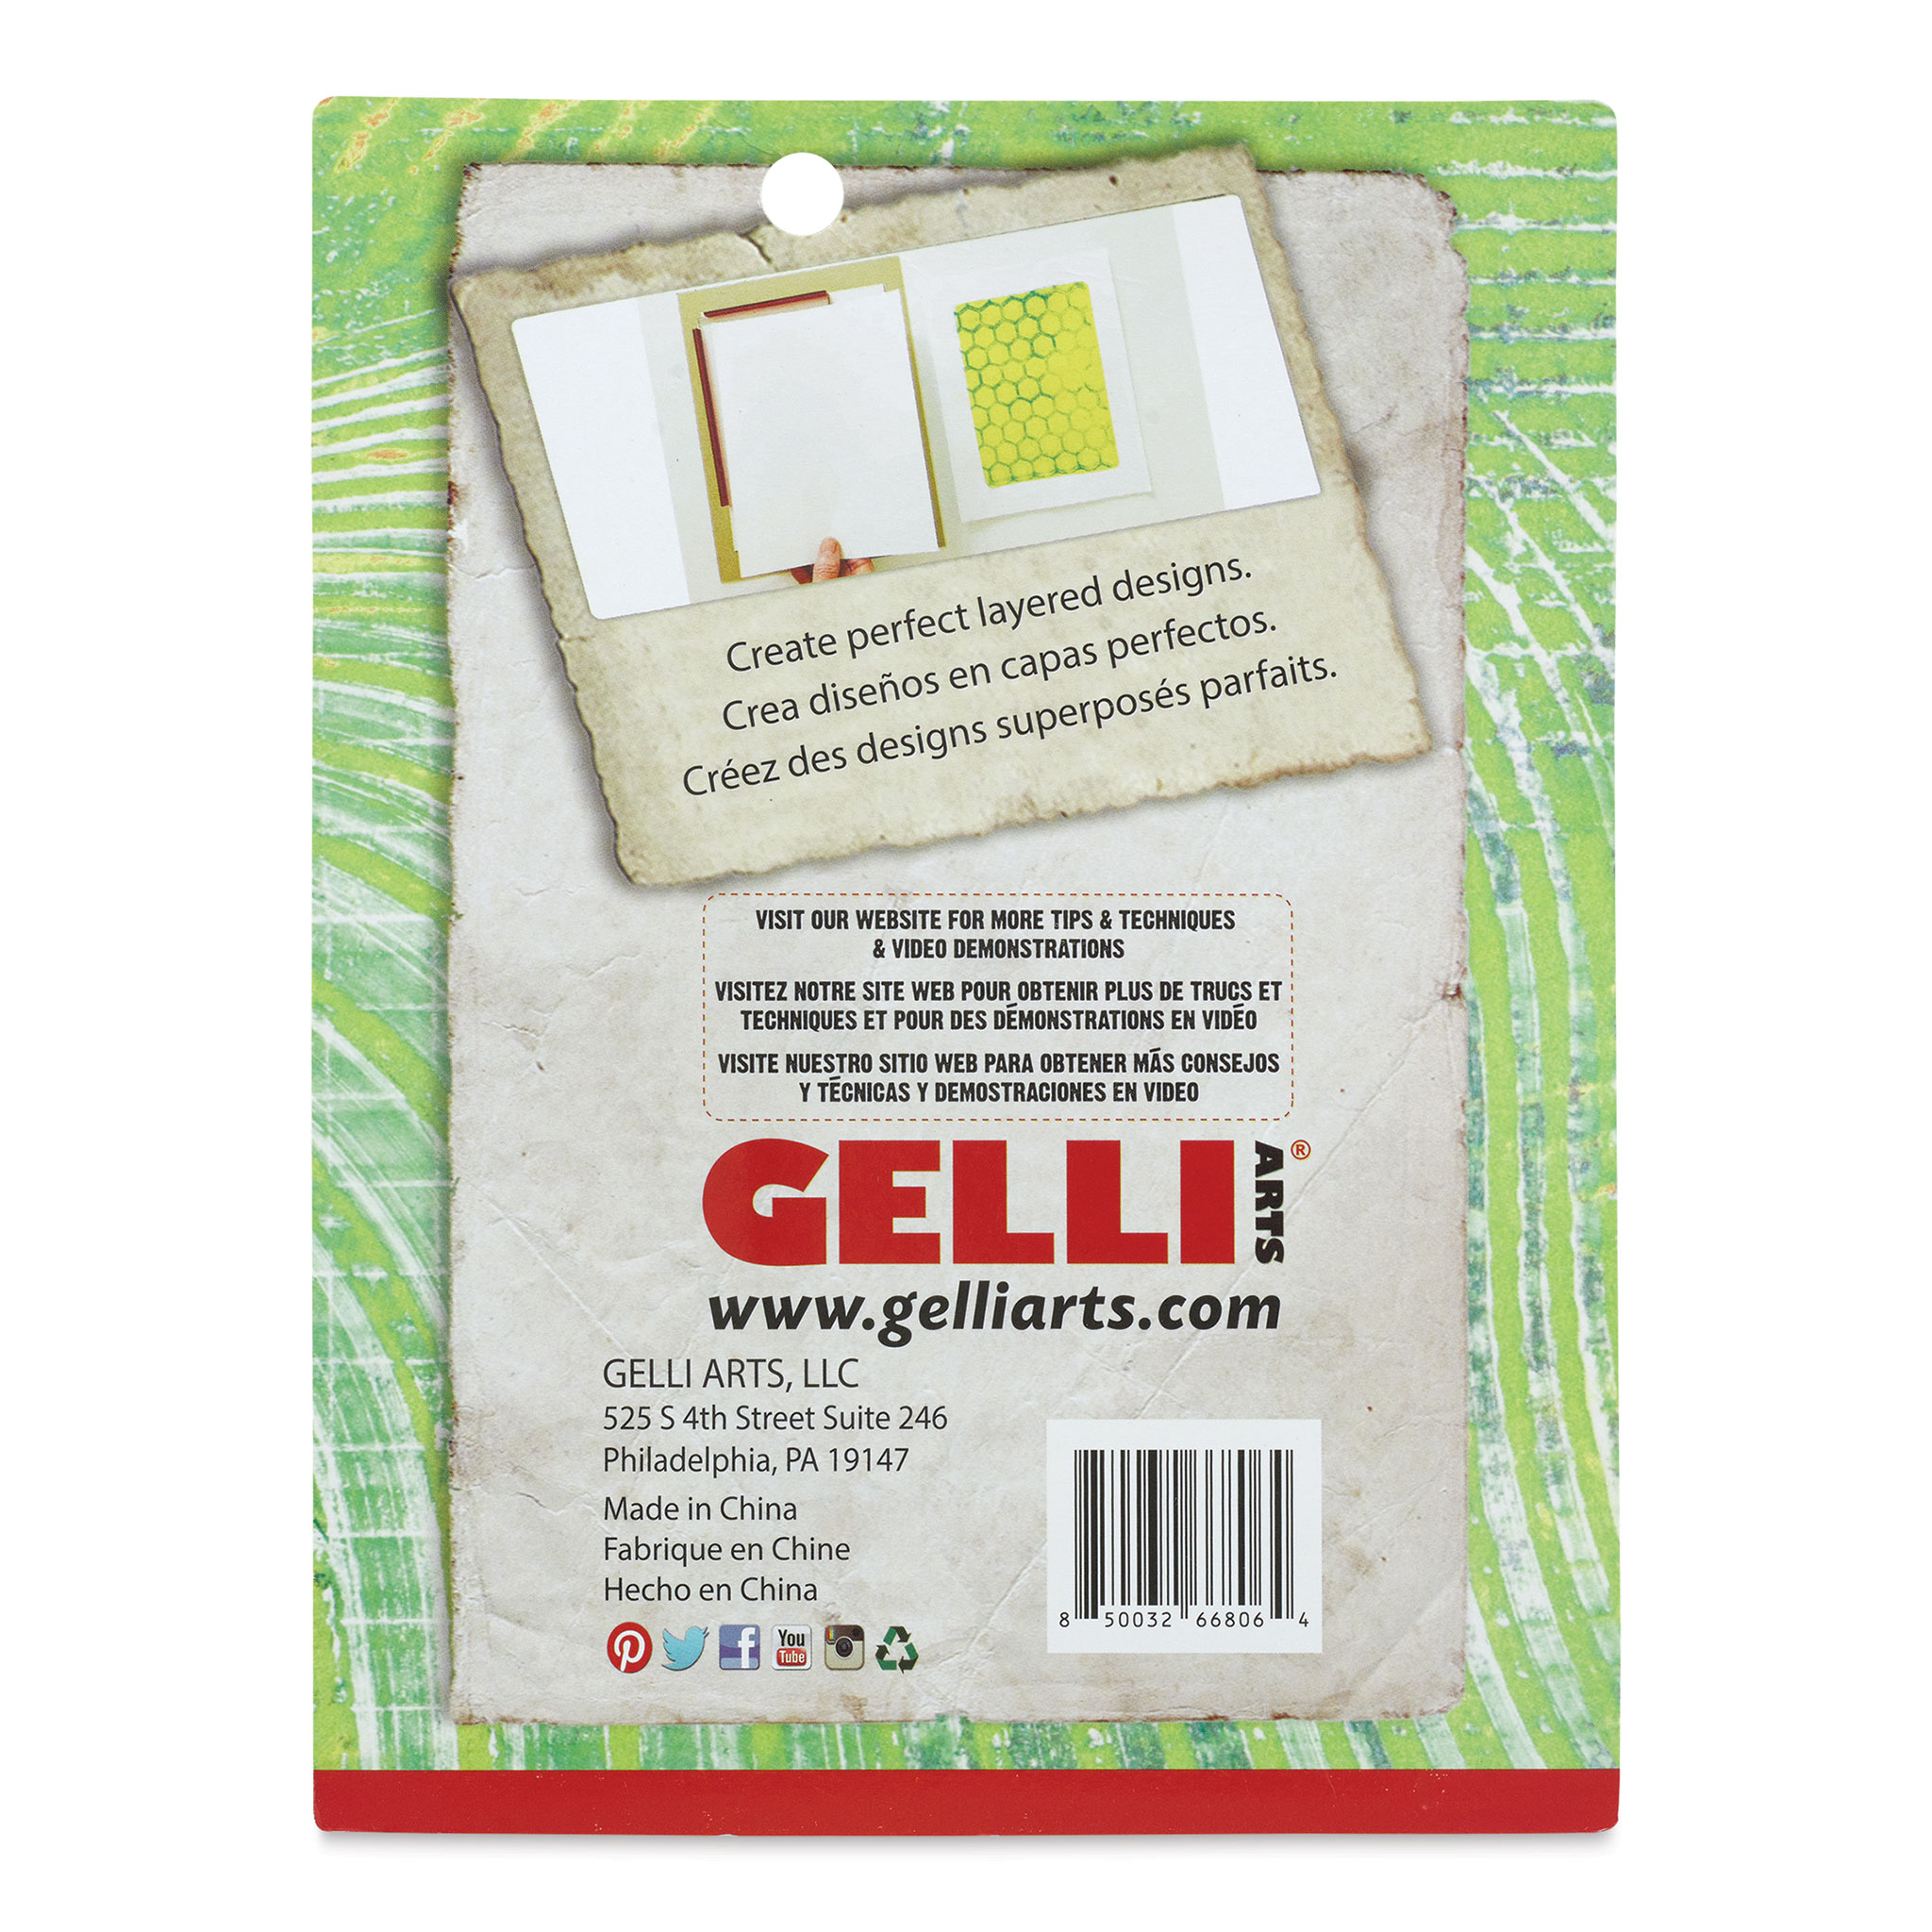 Gelli Arts Mini Placement Tool - 5W x 7L x 3/8H